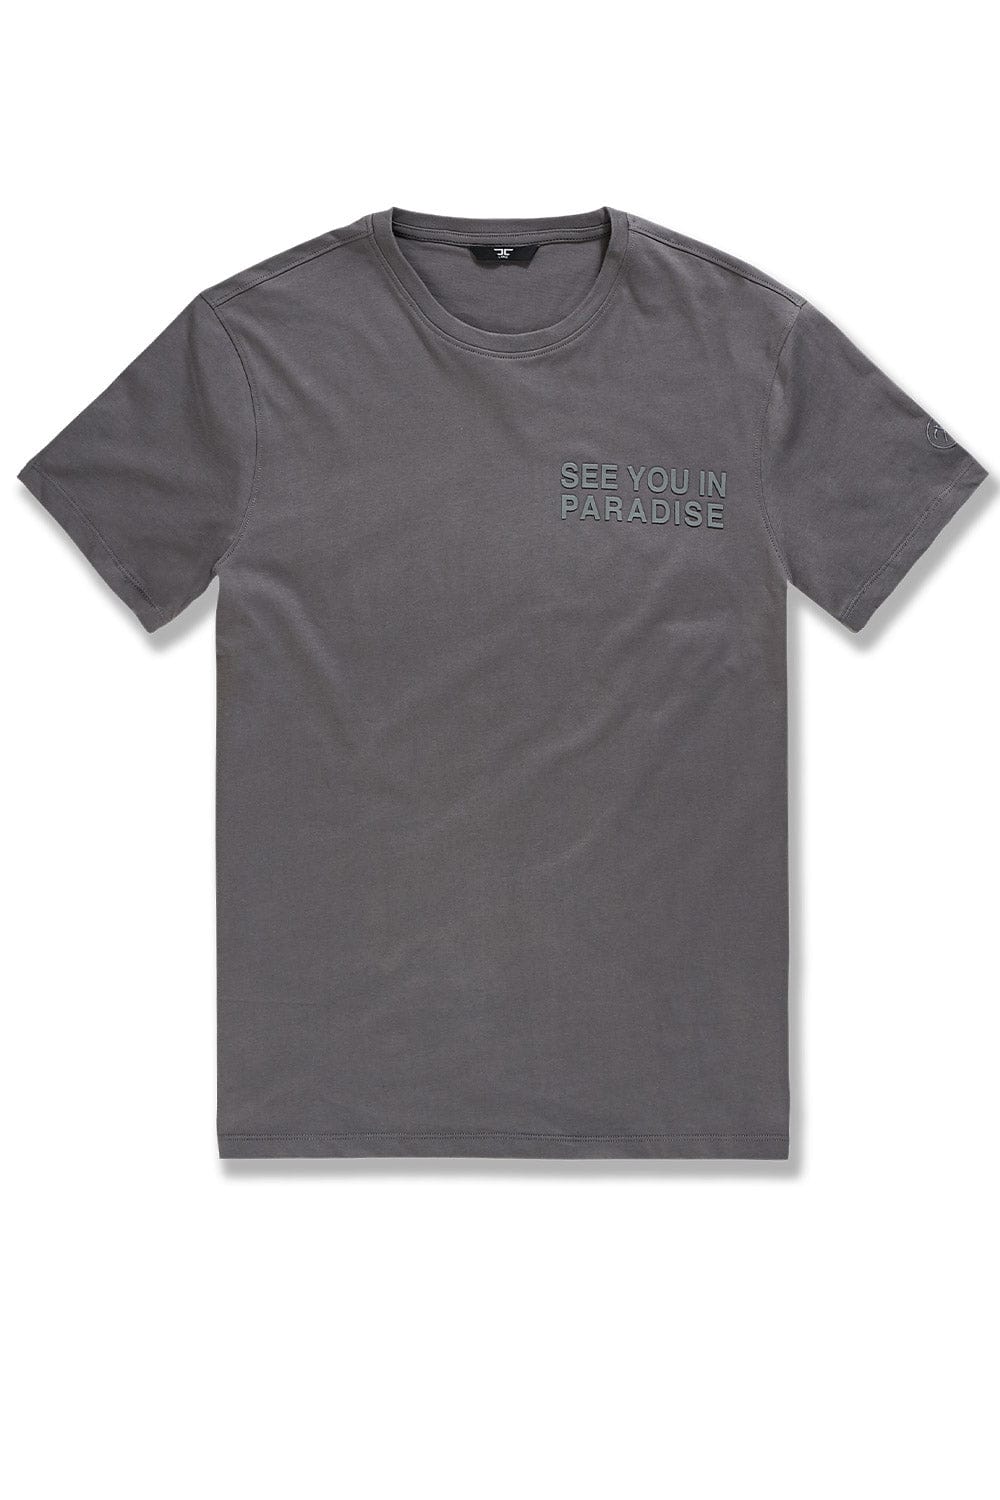 JC Big Men Big Men's Paradise Tonal T-Shirt (Charcoal)